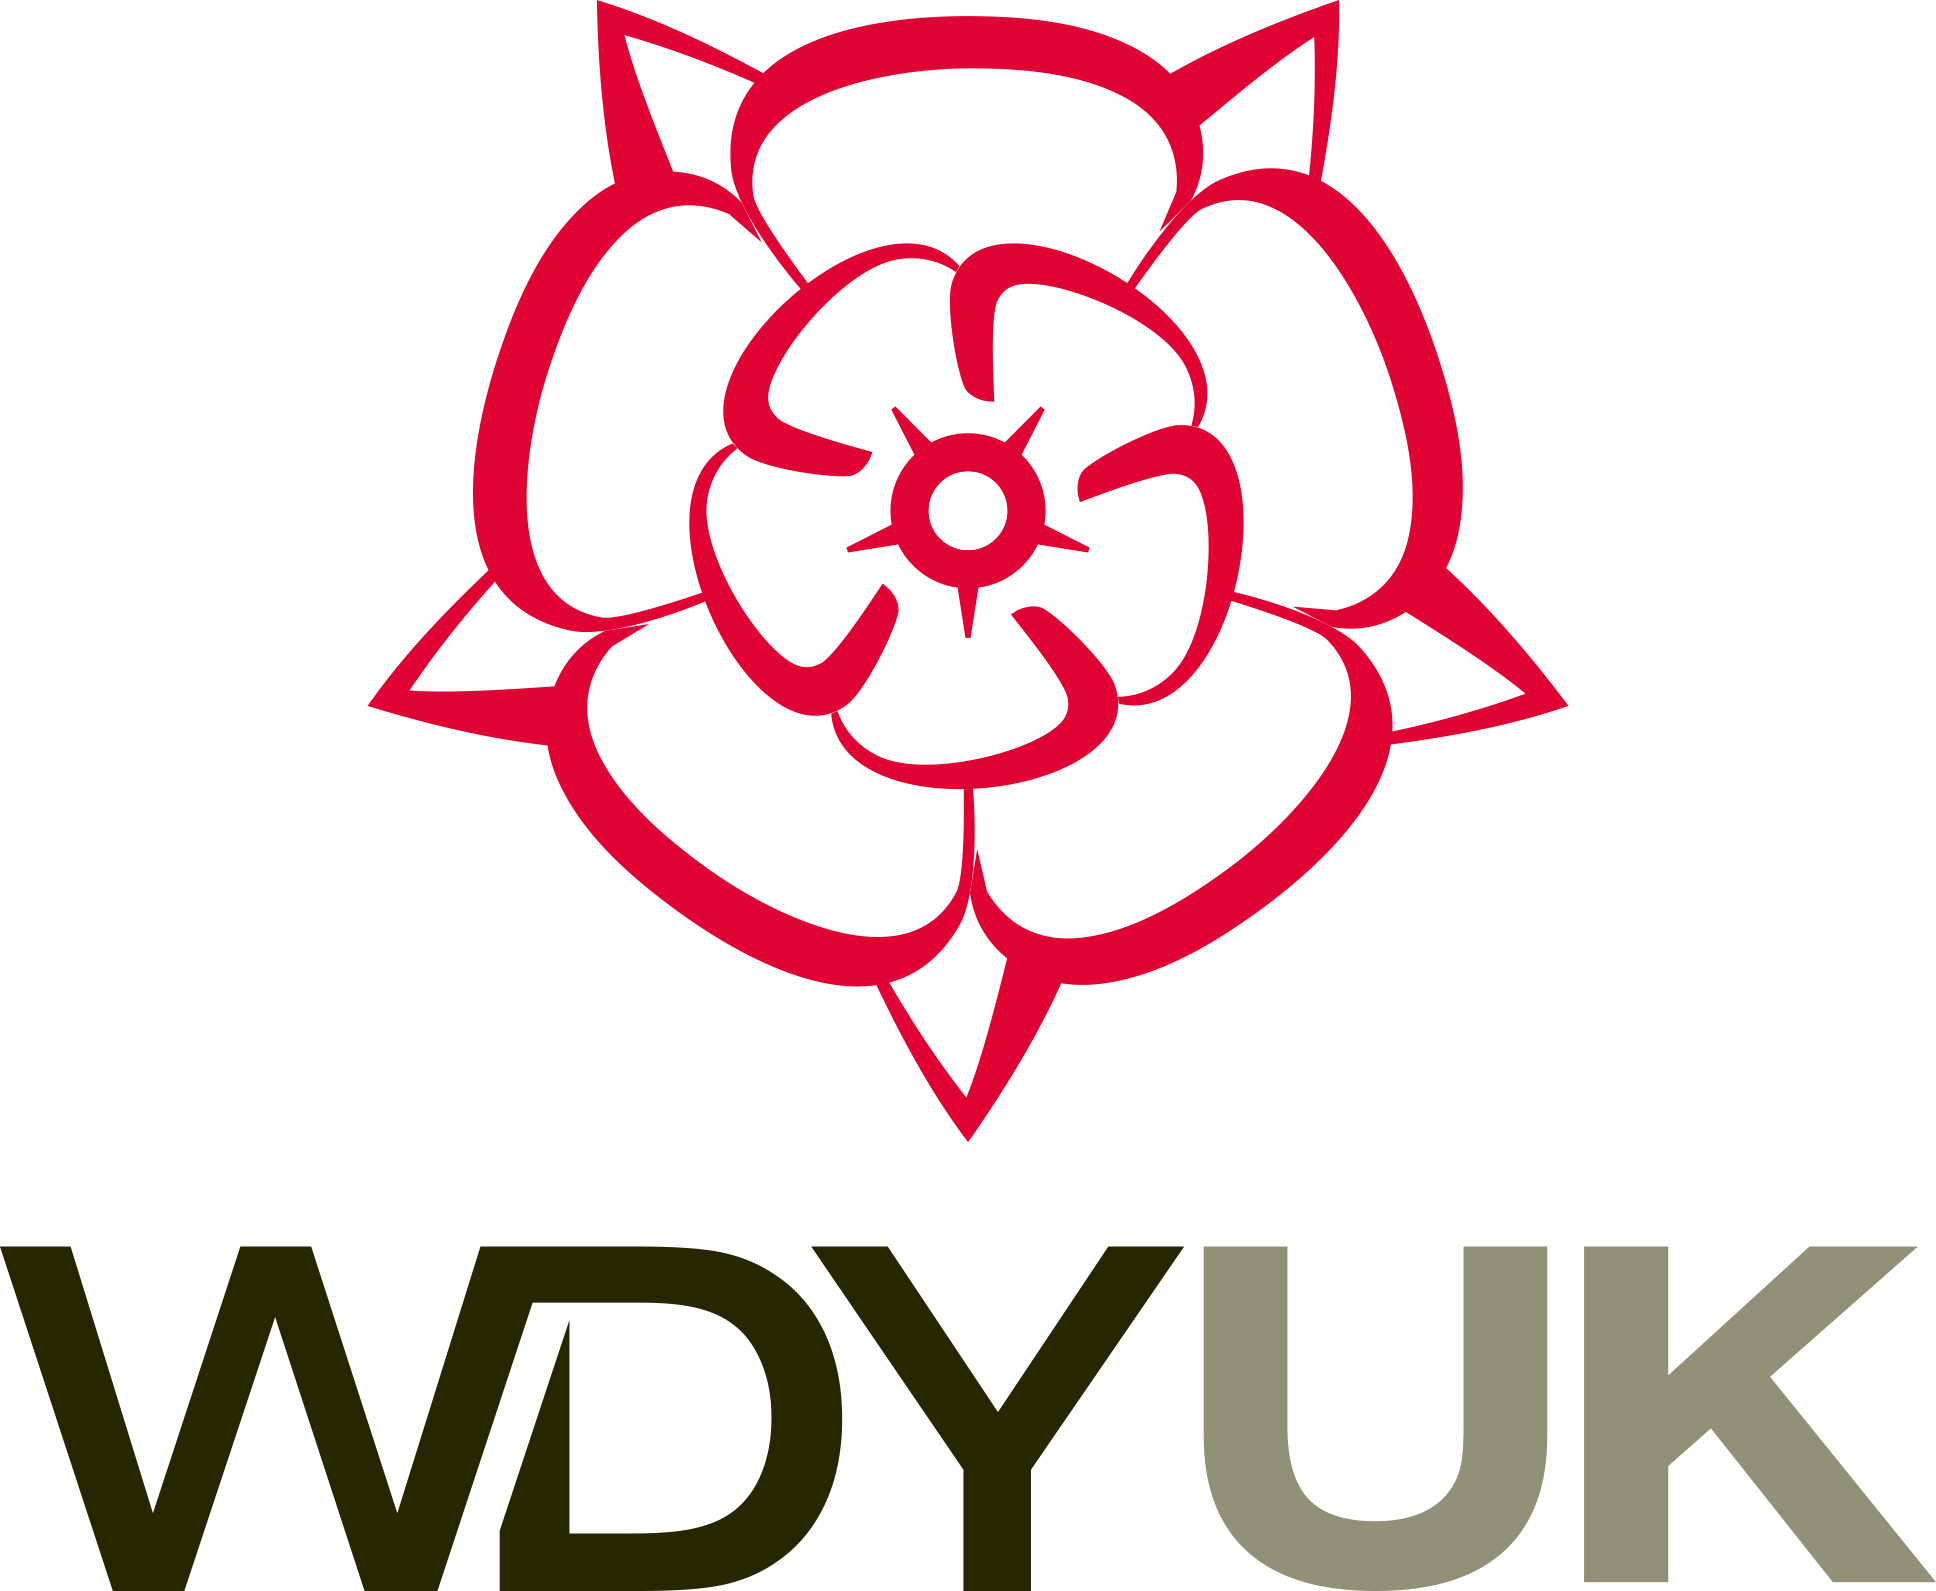 WDY UK